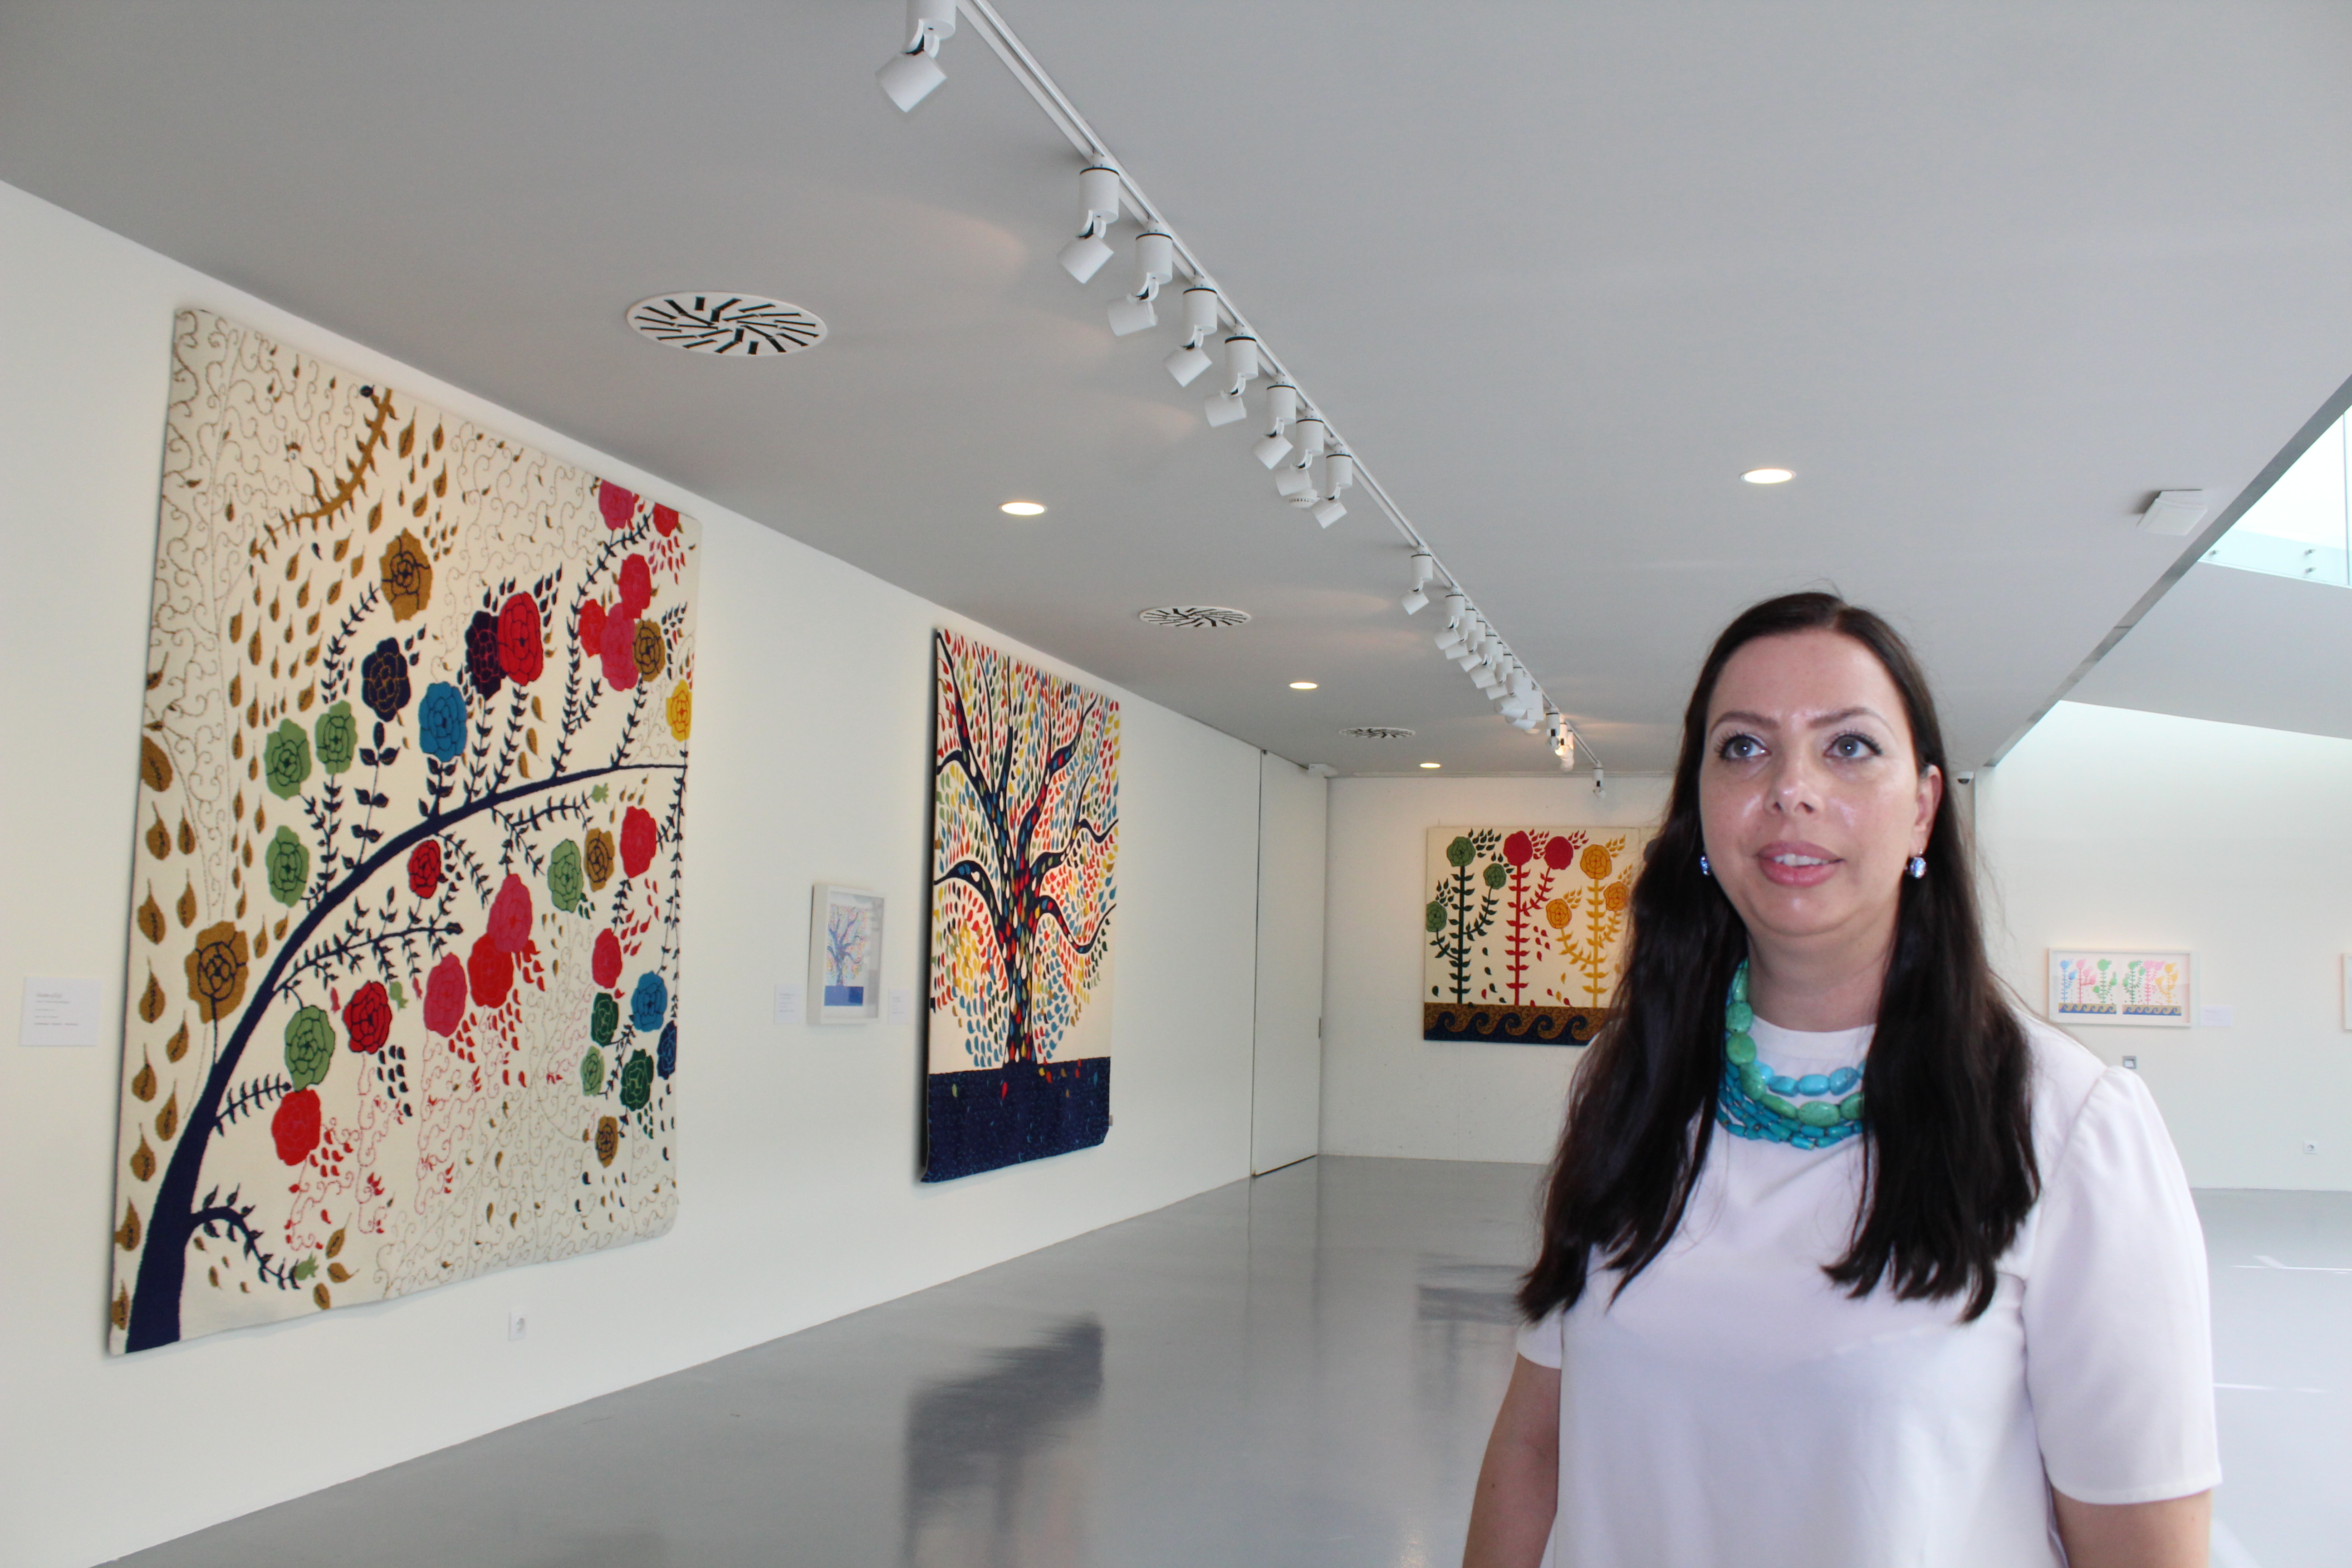 Castelo Branco: Centro de Cultura Contemporânea organiza visita guiada com a artista Cristina Rodrigues à exposição “Retrospectiva”.